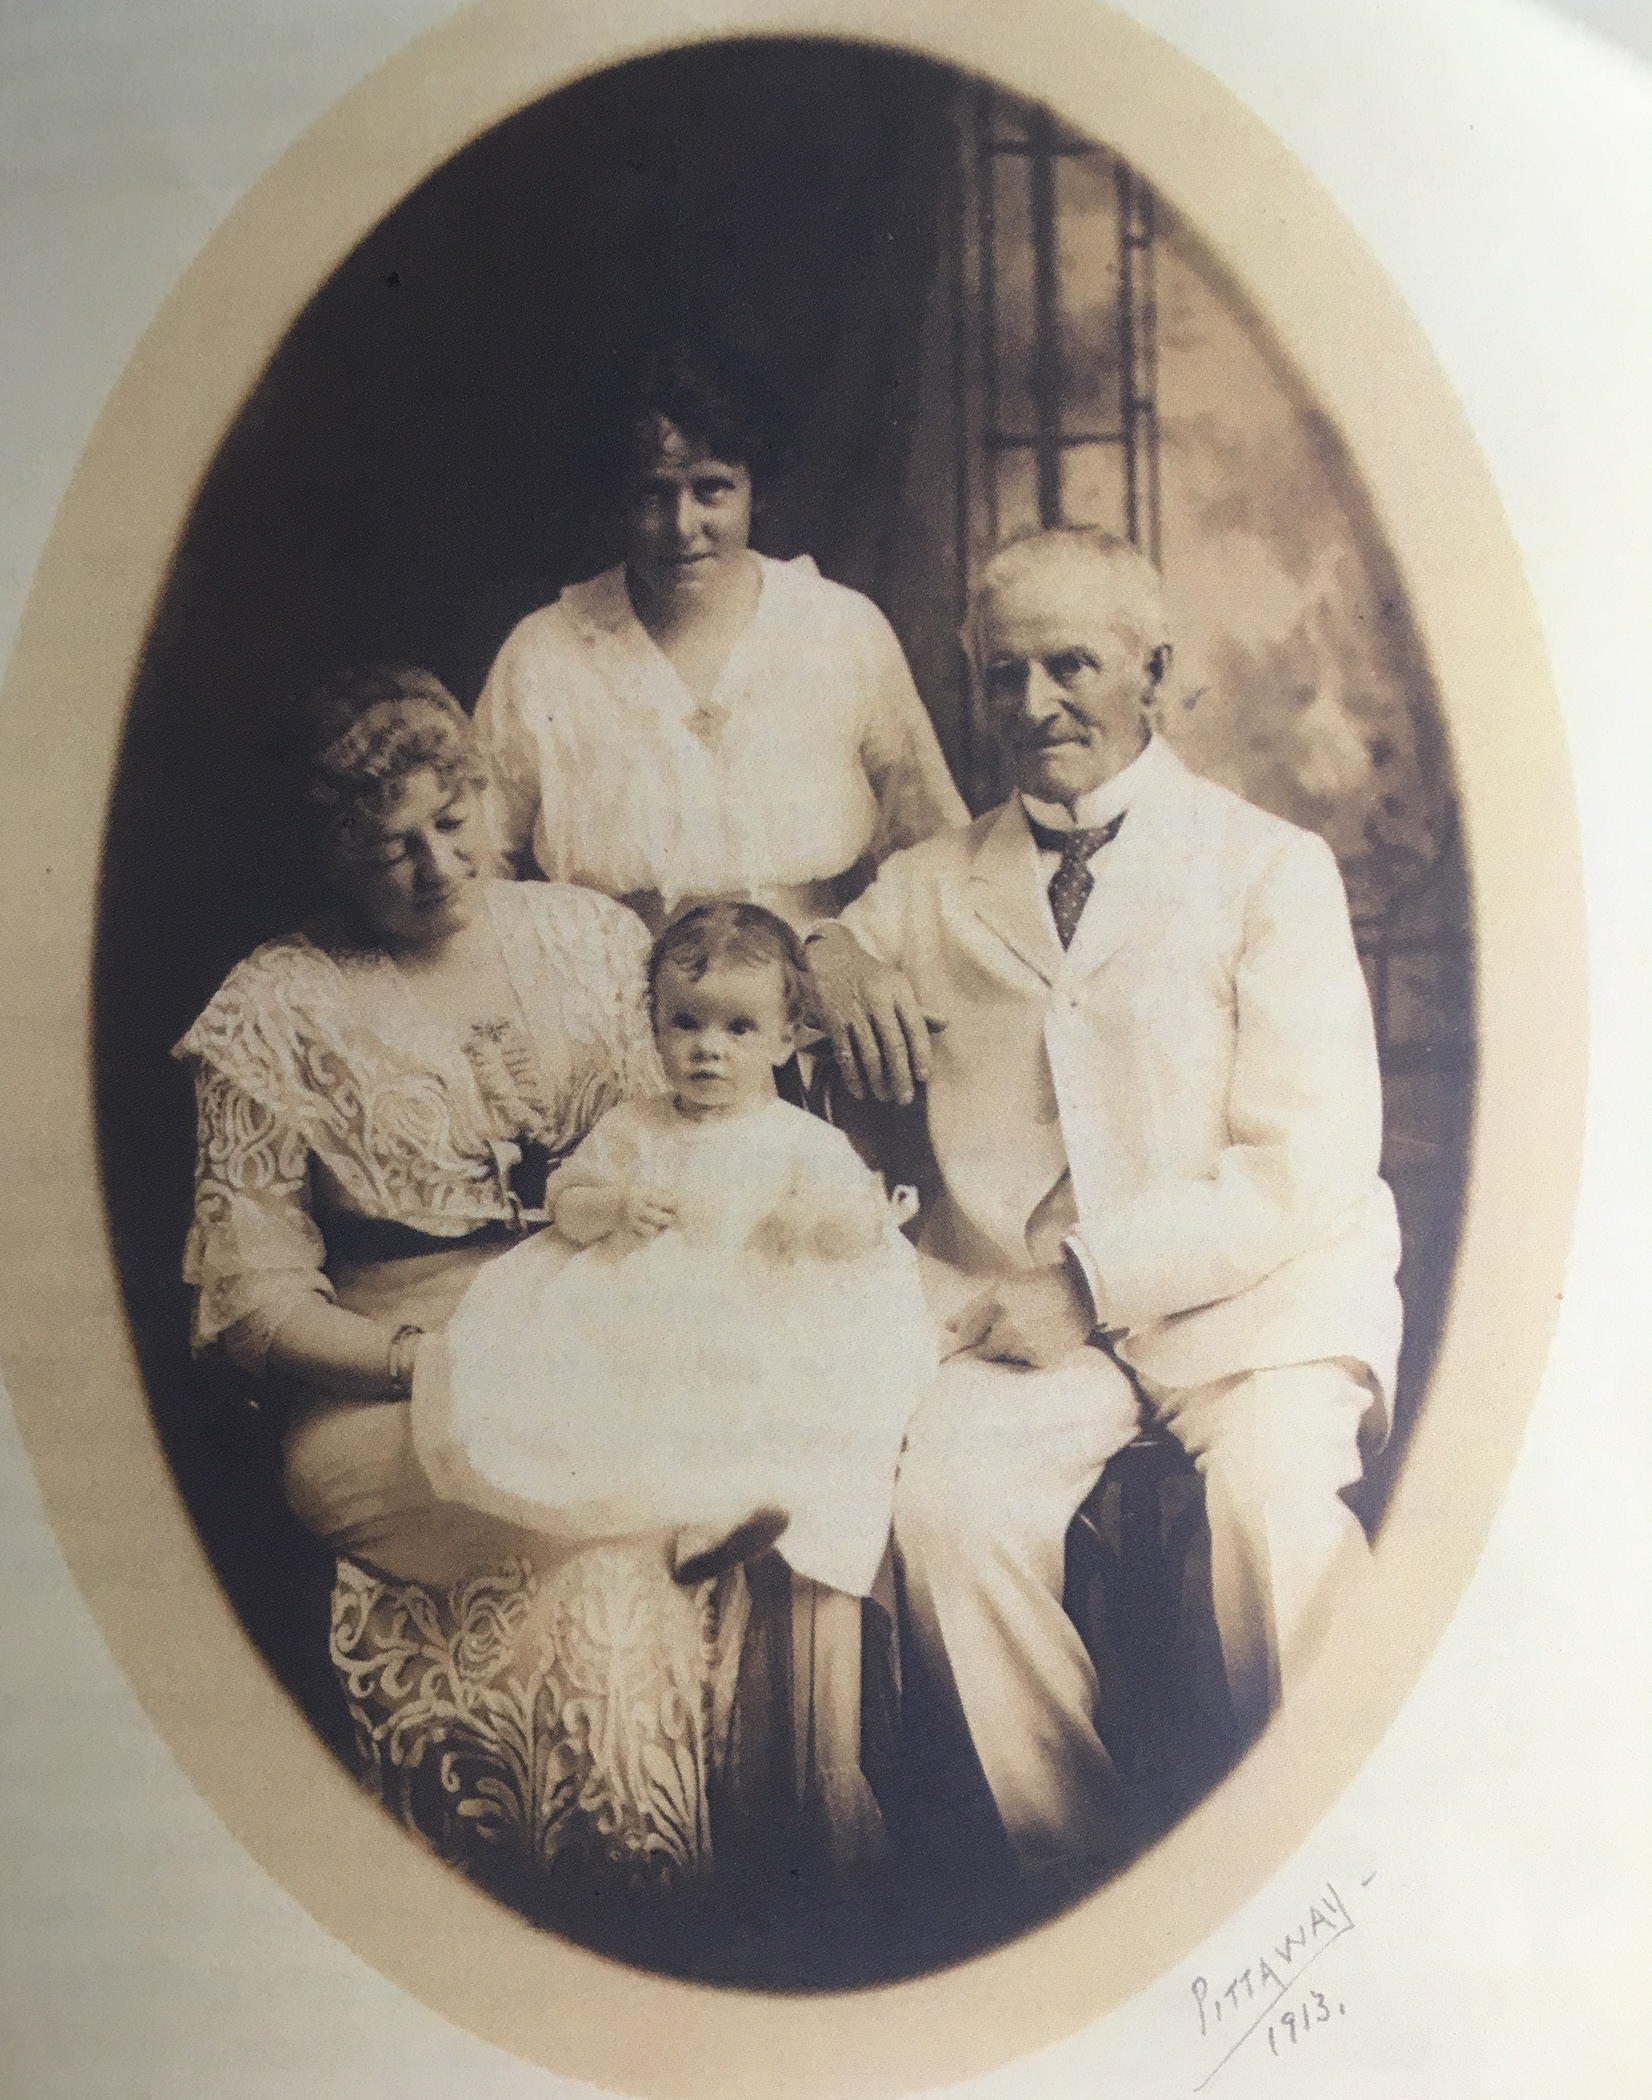 Photographie sépia ovale montrant quatre personnes (la famille Bate), dont un homme âgé (Sir Henry Bate), et deux femmes dont l’une (sa femme) est assise, un bébé (sa petite fille) sur ses genoux et l’autre (sa fille) se tenant debout derrière eux. Tous sont vêtus de blanc. 